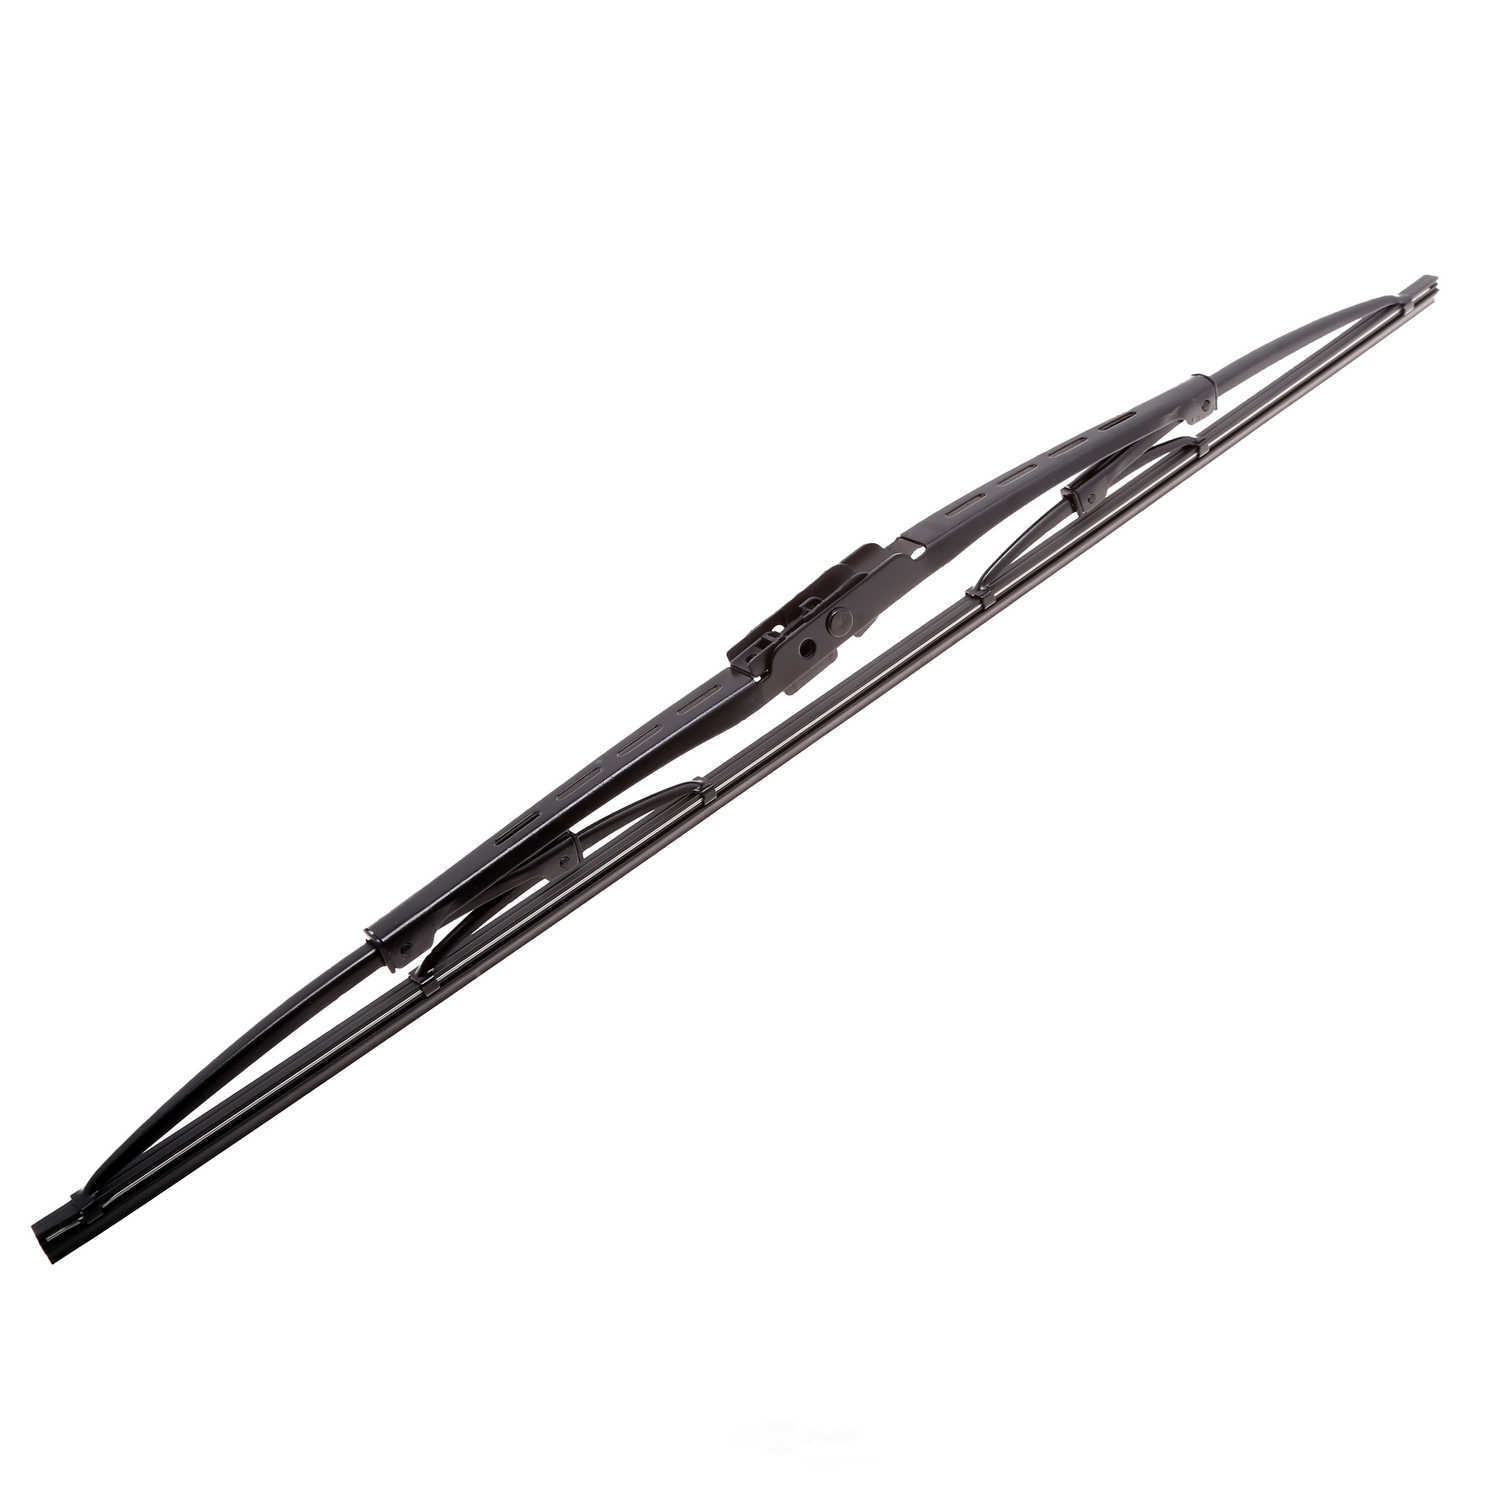 ANCO WIPER PRODUCTS - ANCO 31-Series Wiper Blade - ANC 31-19